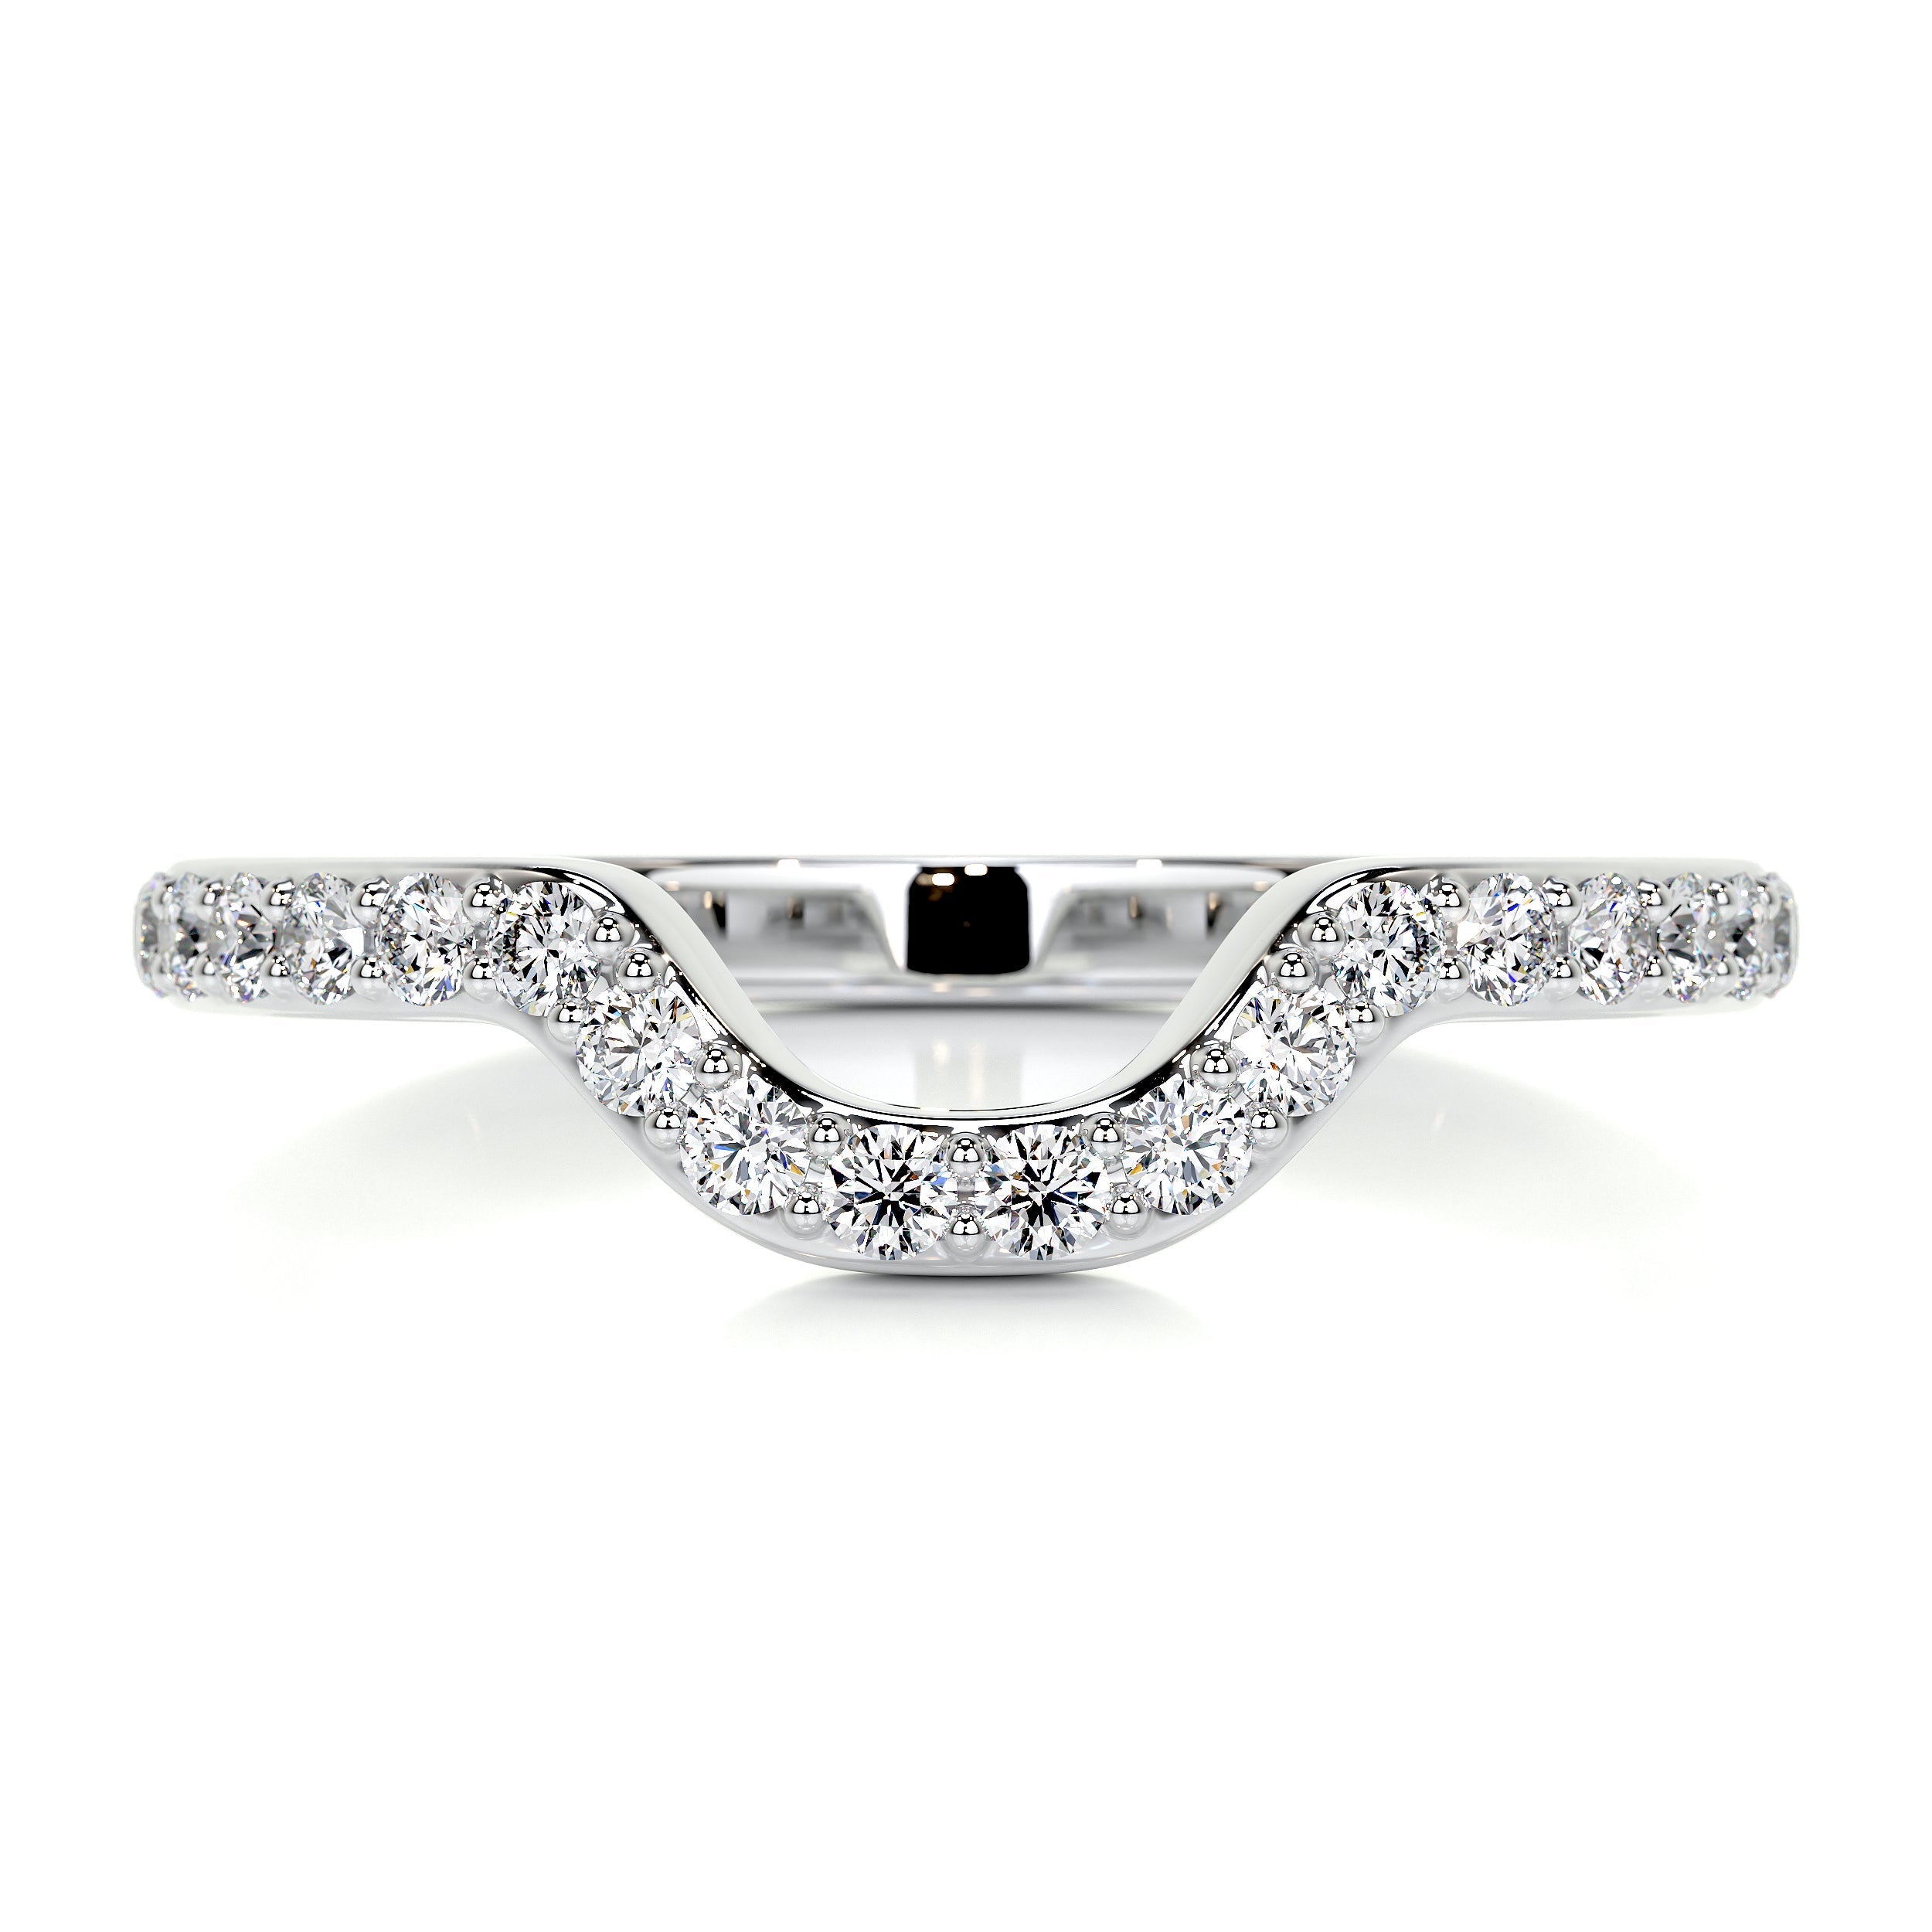 Nina Diamond Wedding Ring   (0.2 Carat) -14K White Gold (RTS)